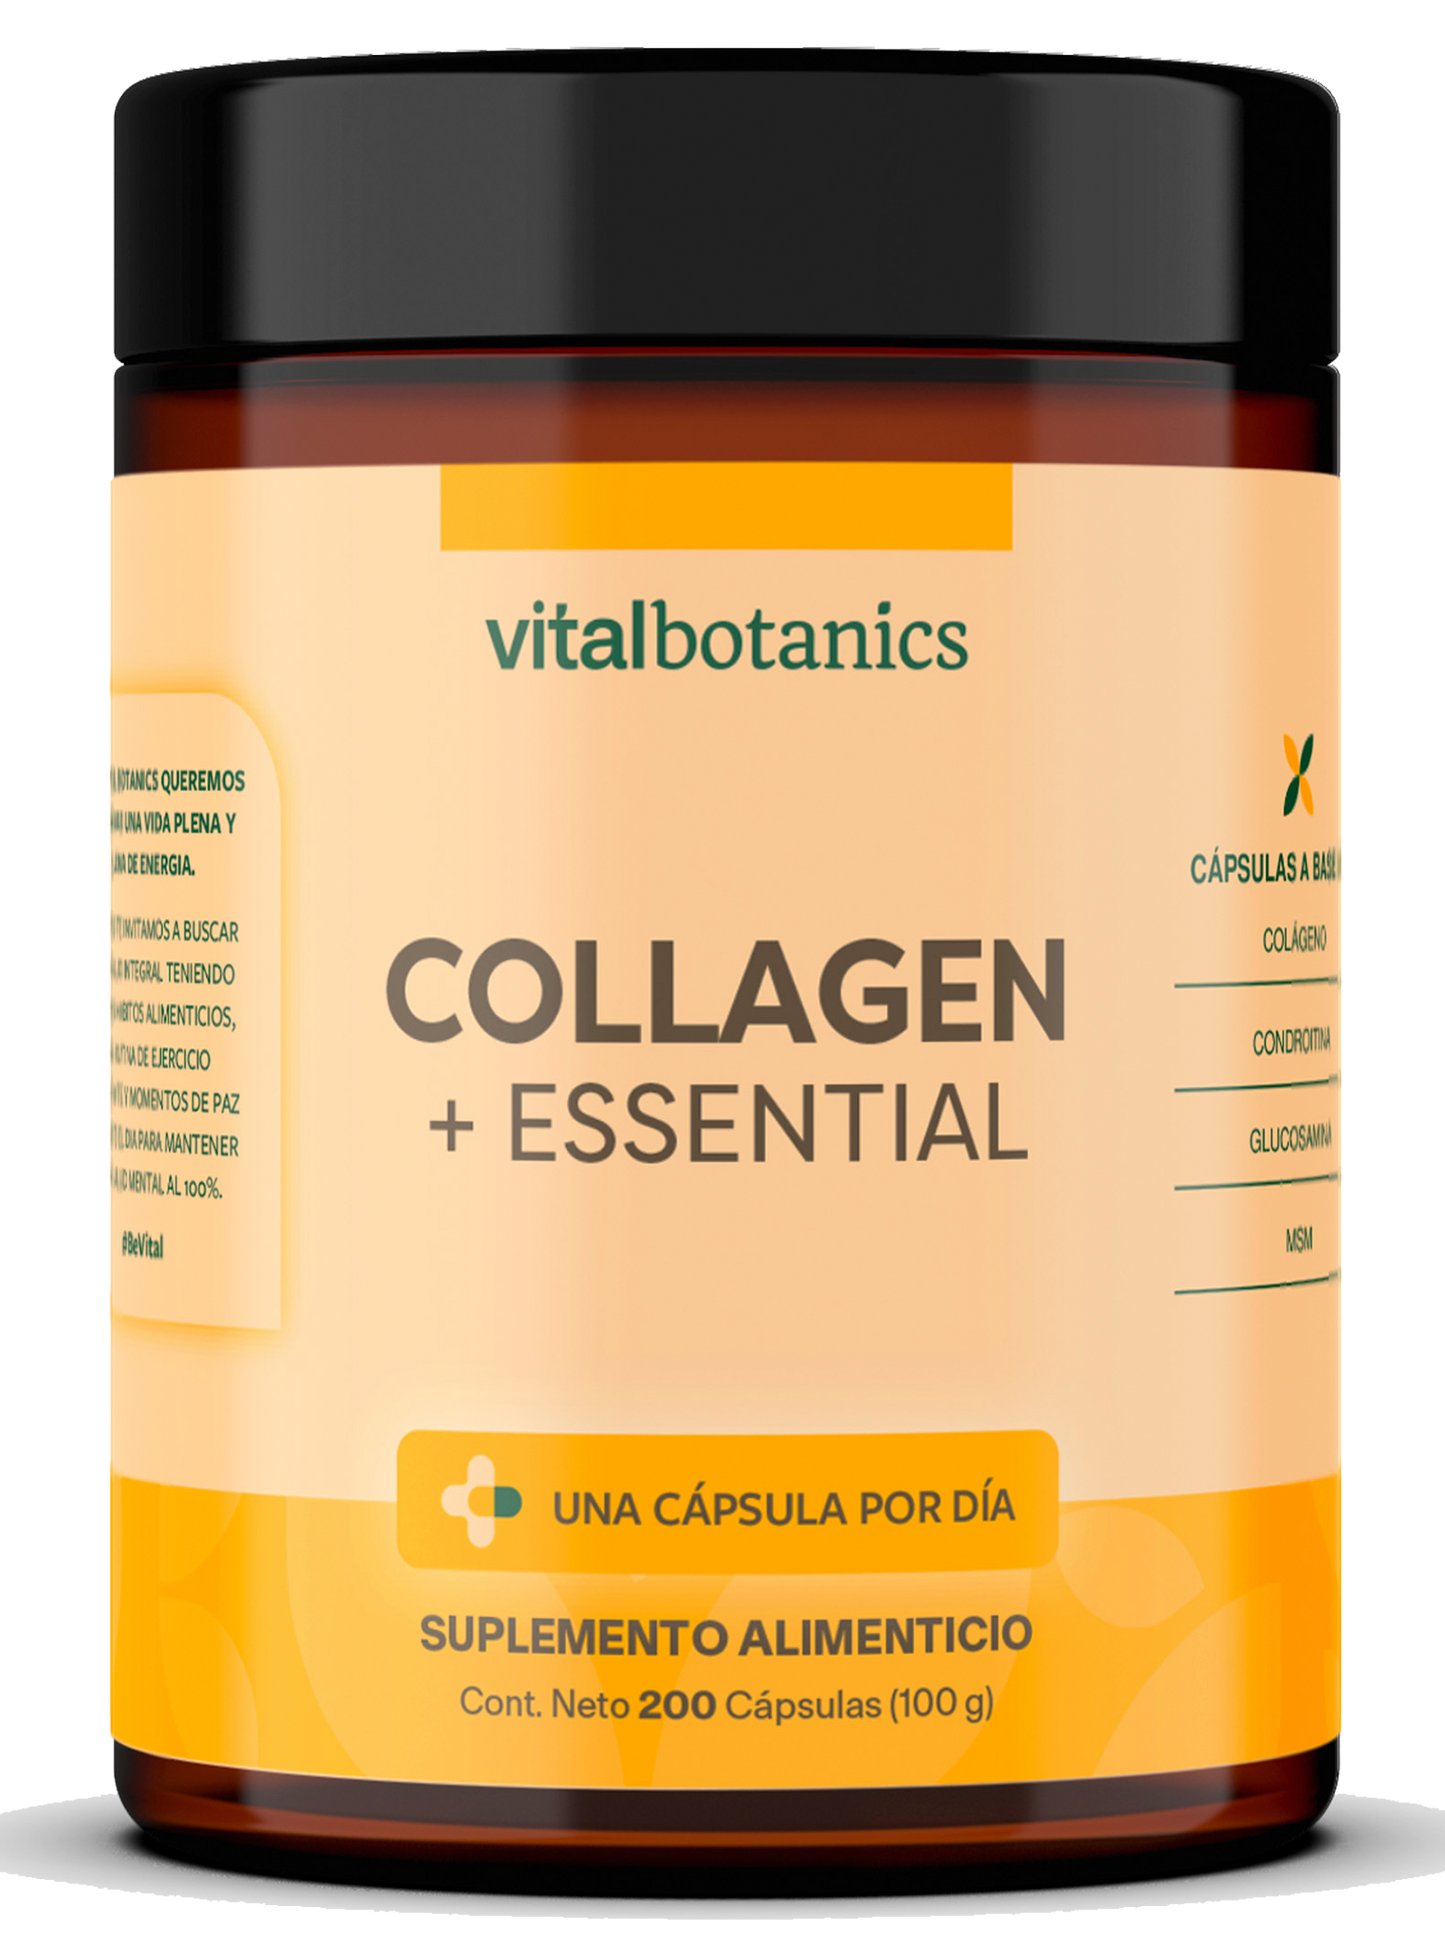 COLLAGEN + ESSENTIAL | Condroitina, Glucosamina, MSM y Colágeno